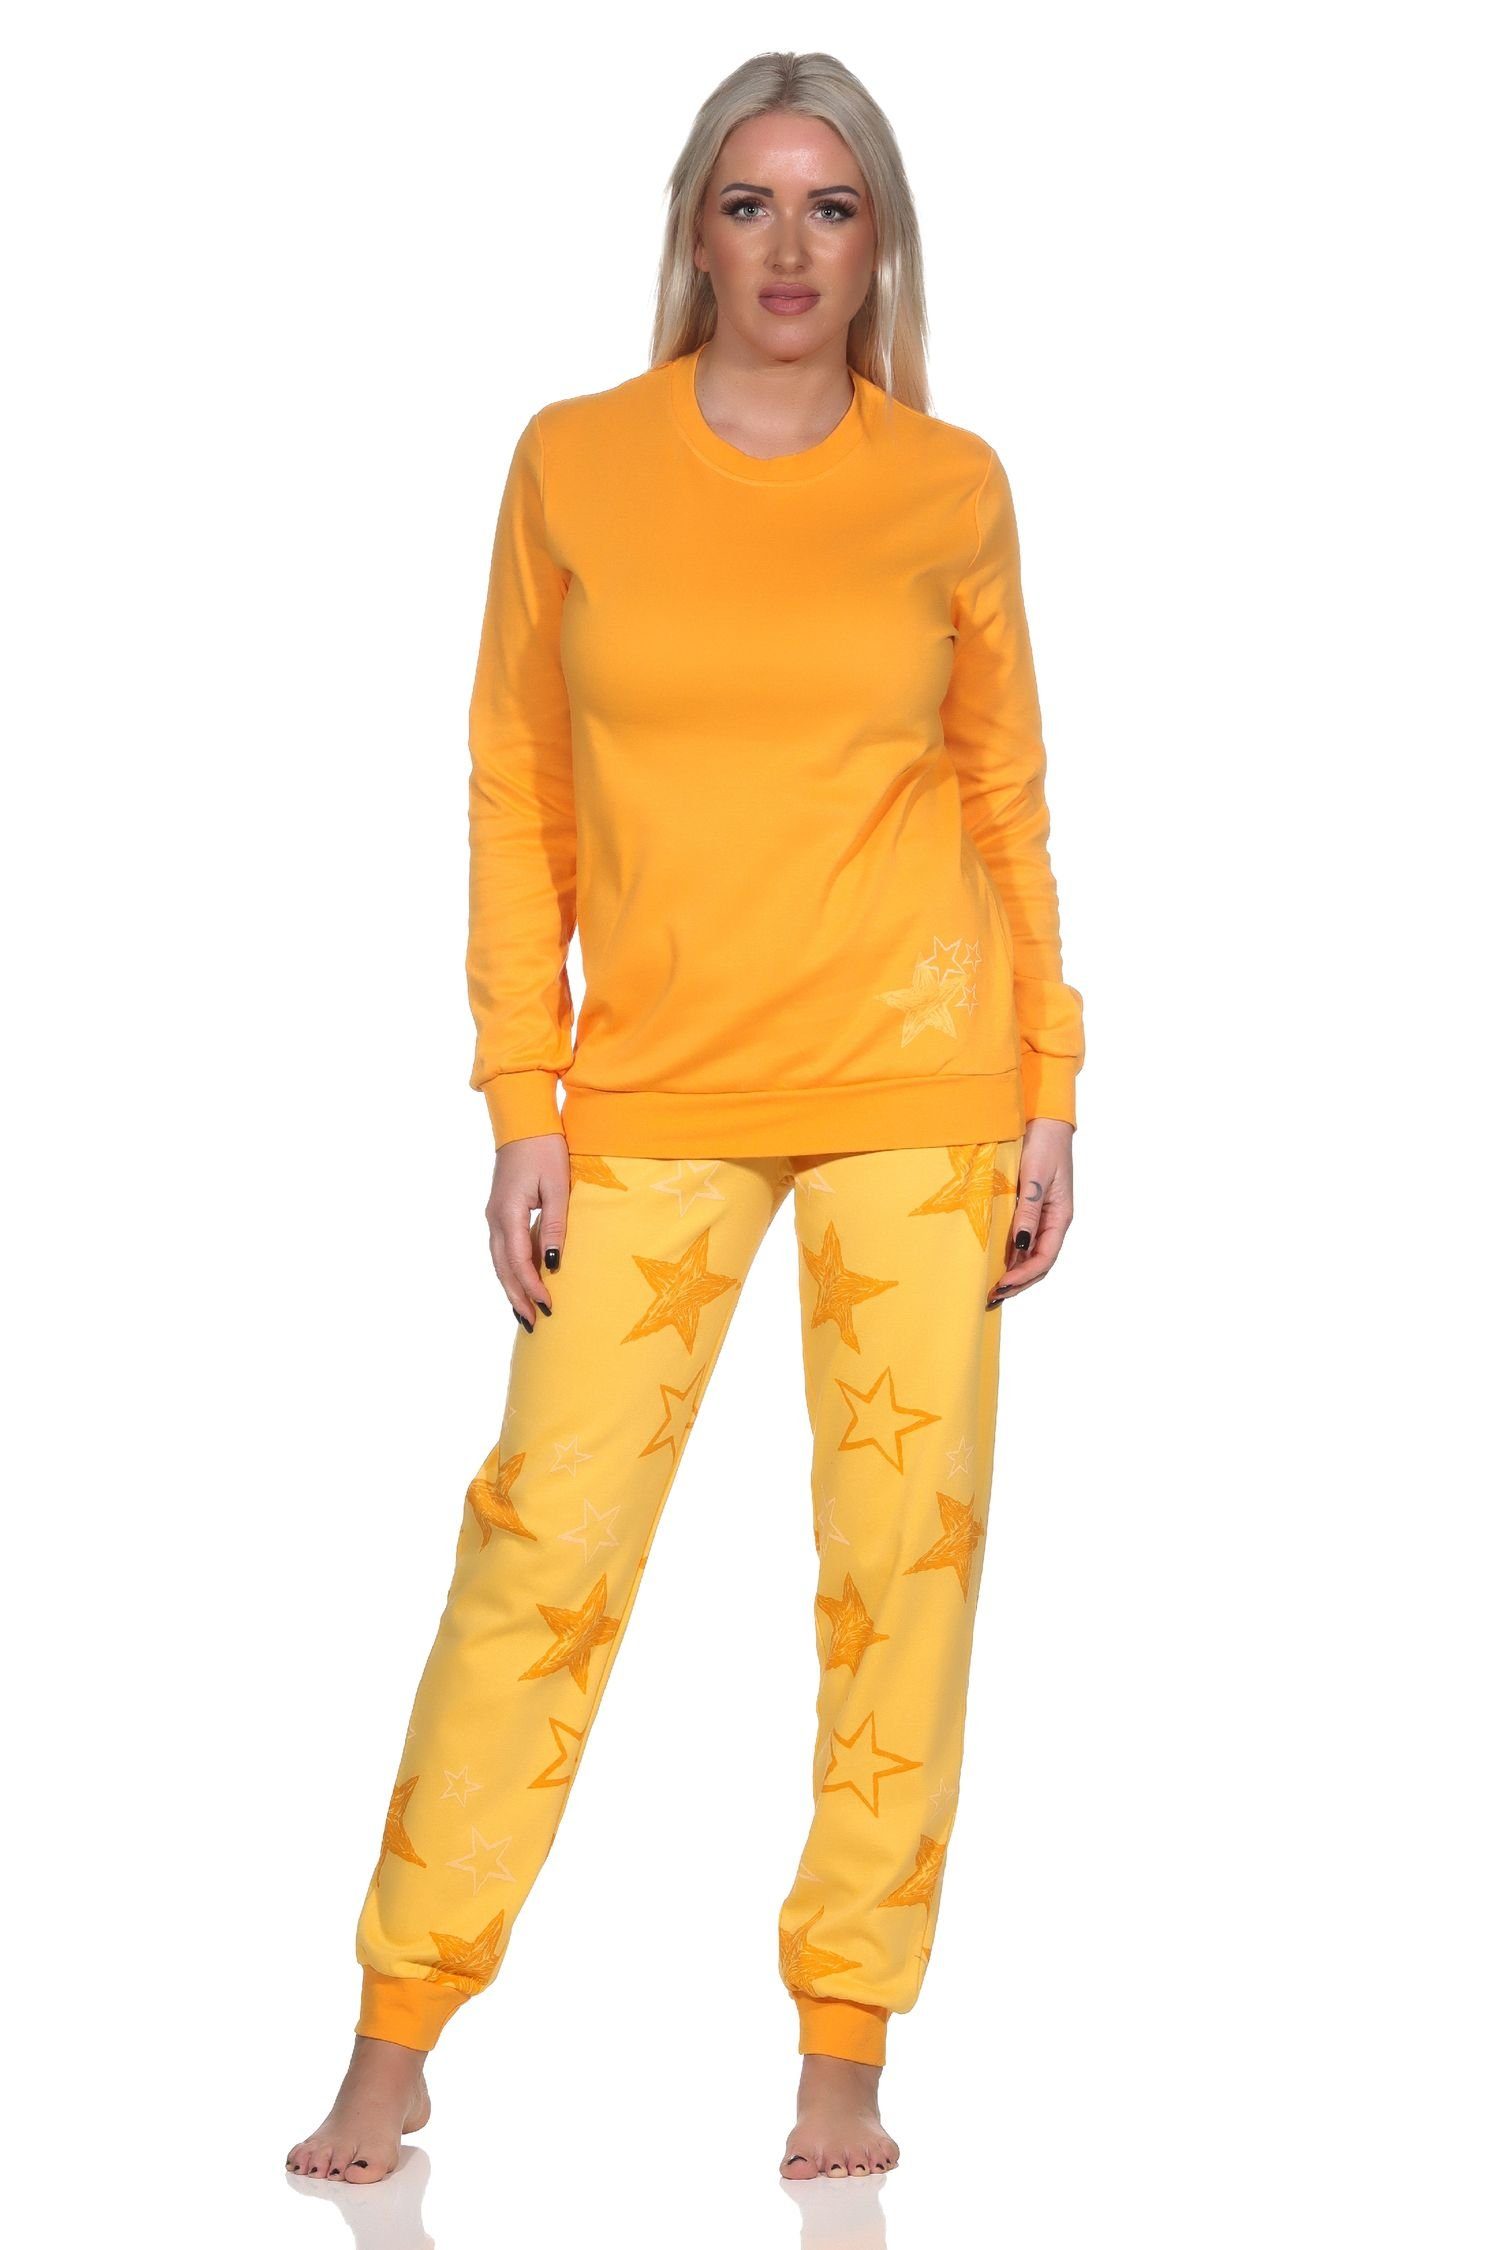 Optik in Sterne Damen orange Normann Interlock Qualität Pyjama Schlafanzug Normann Kuschel